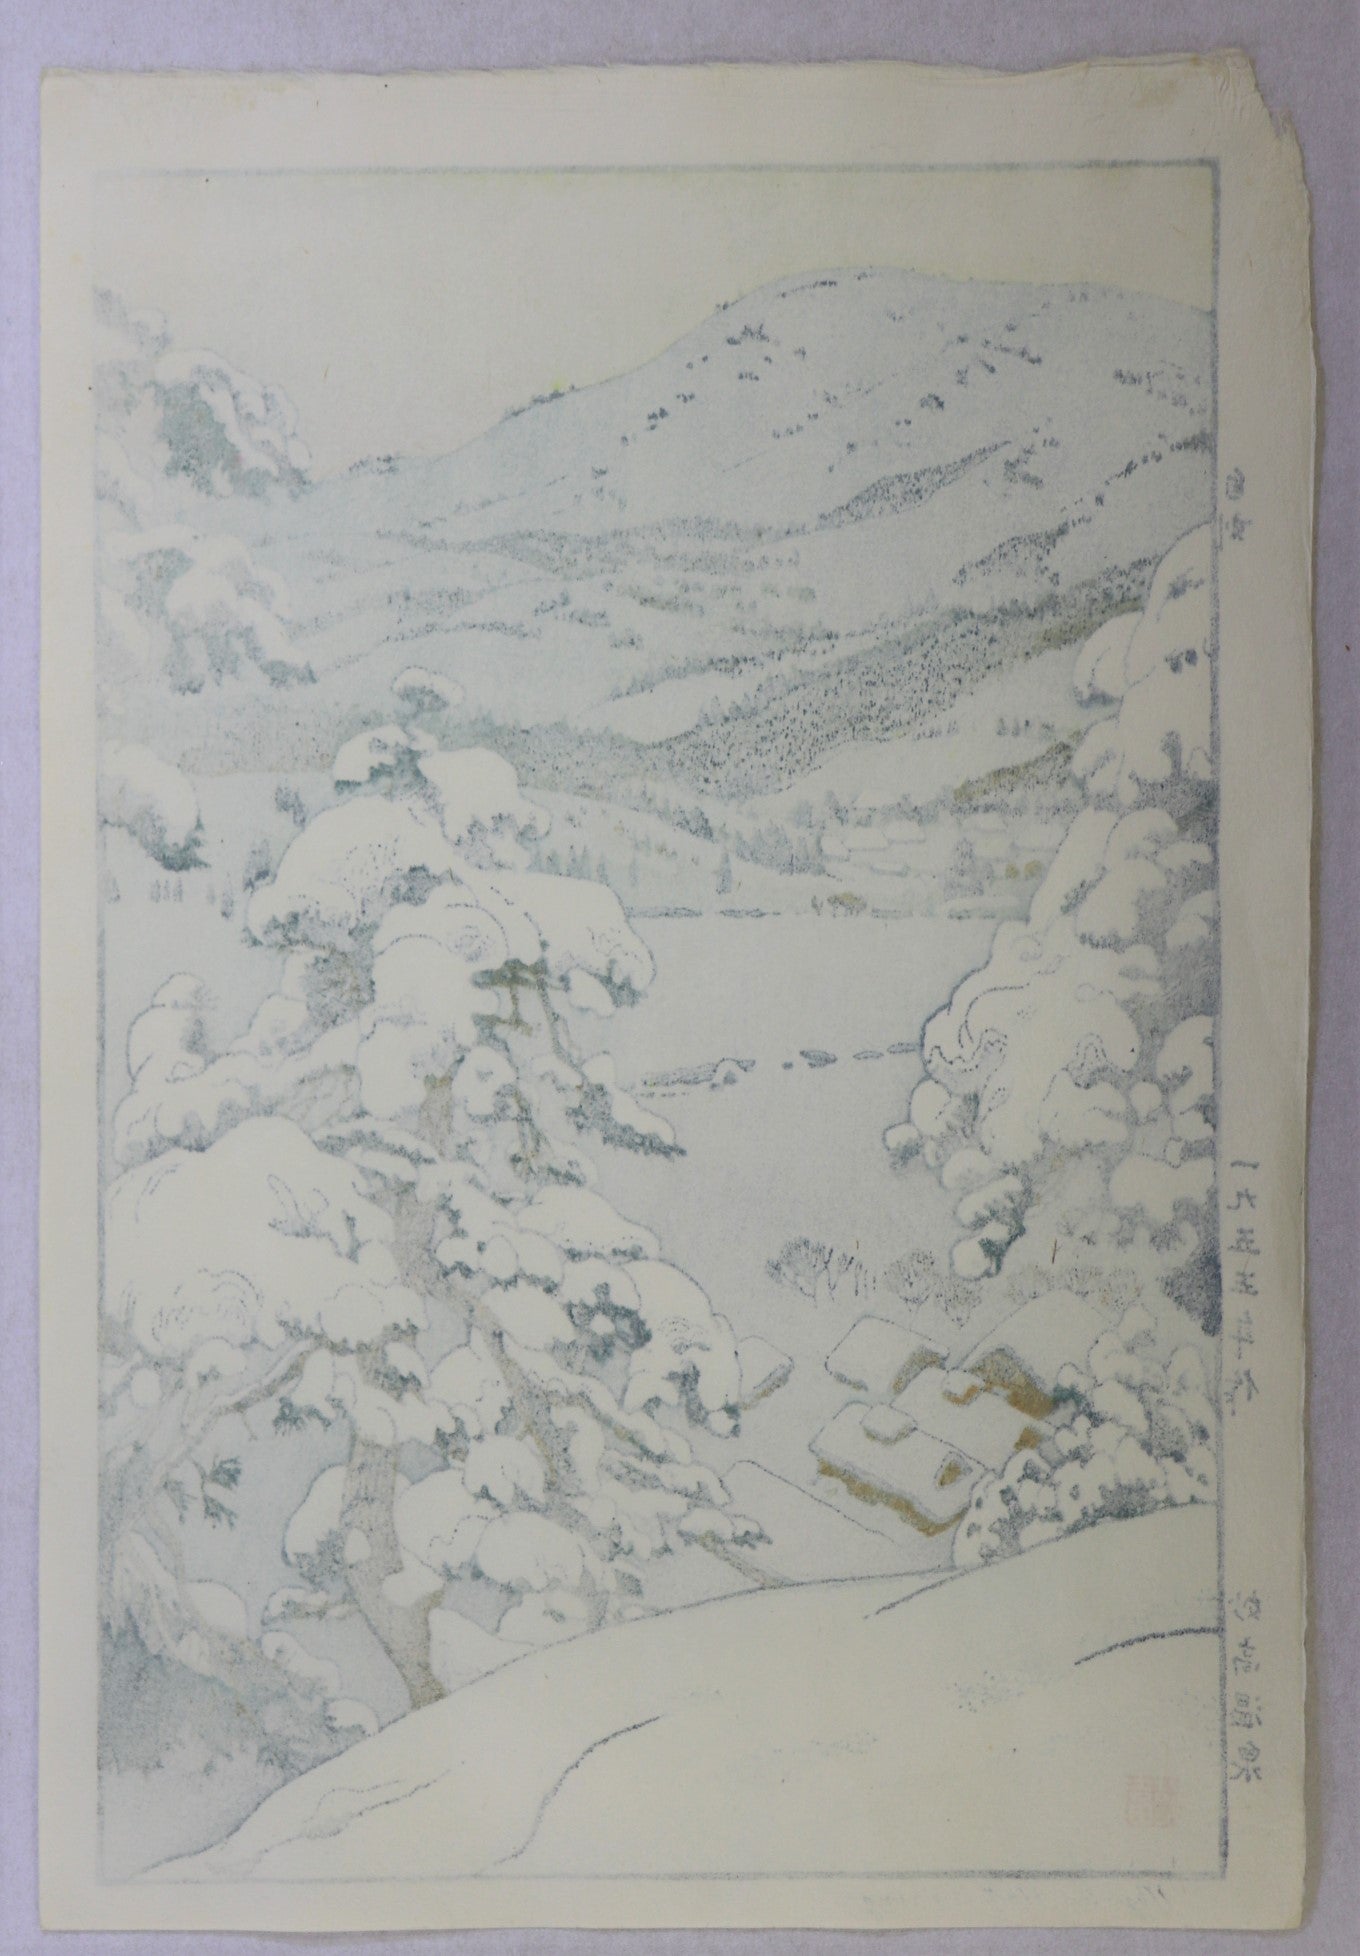 Miyako Hot Spring by Yoshida Toshi / Source Chaude de Miyako par Yoshida Toshi (1955)